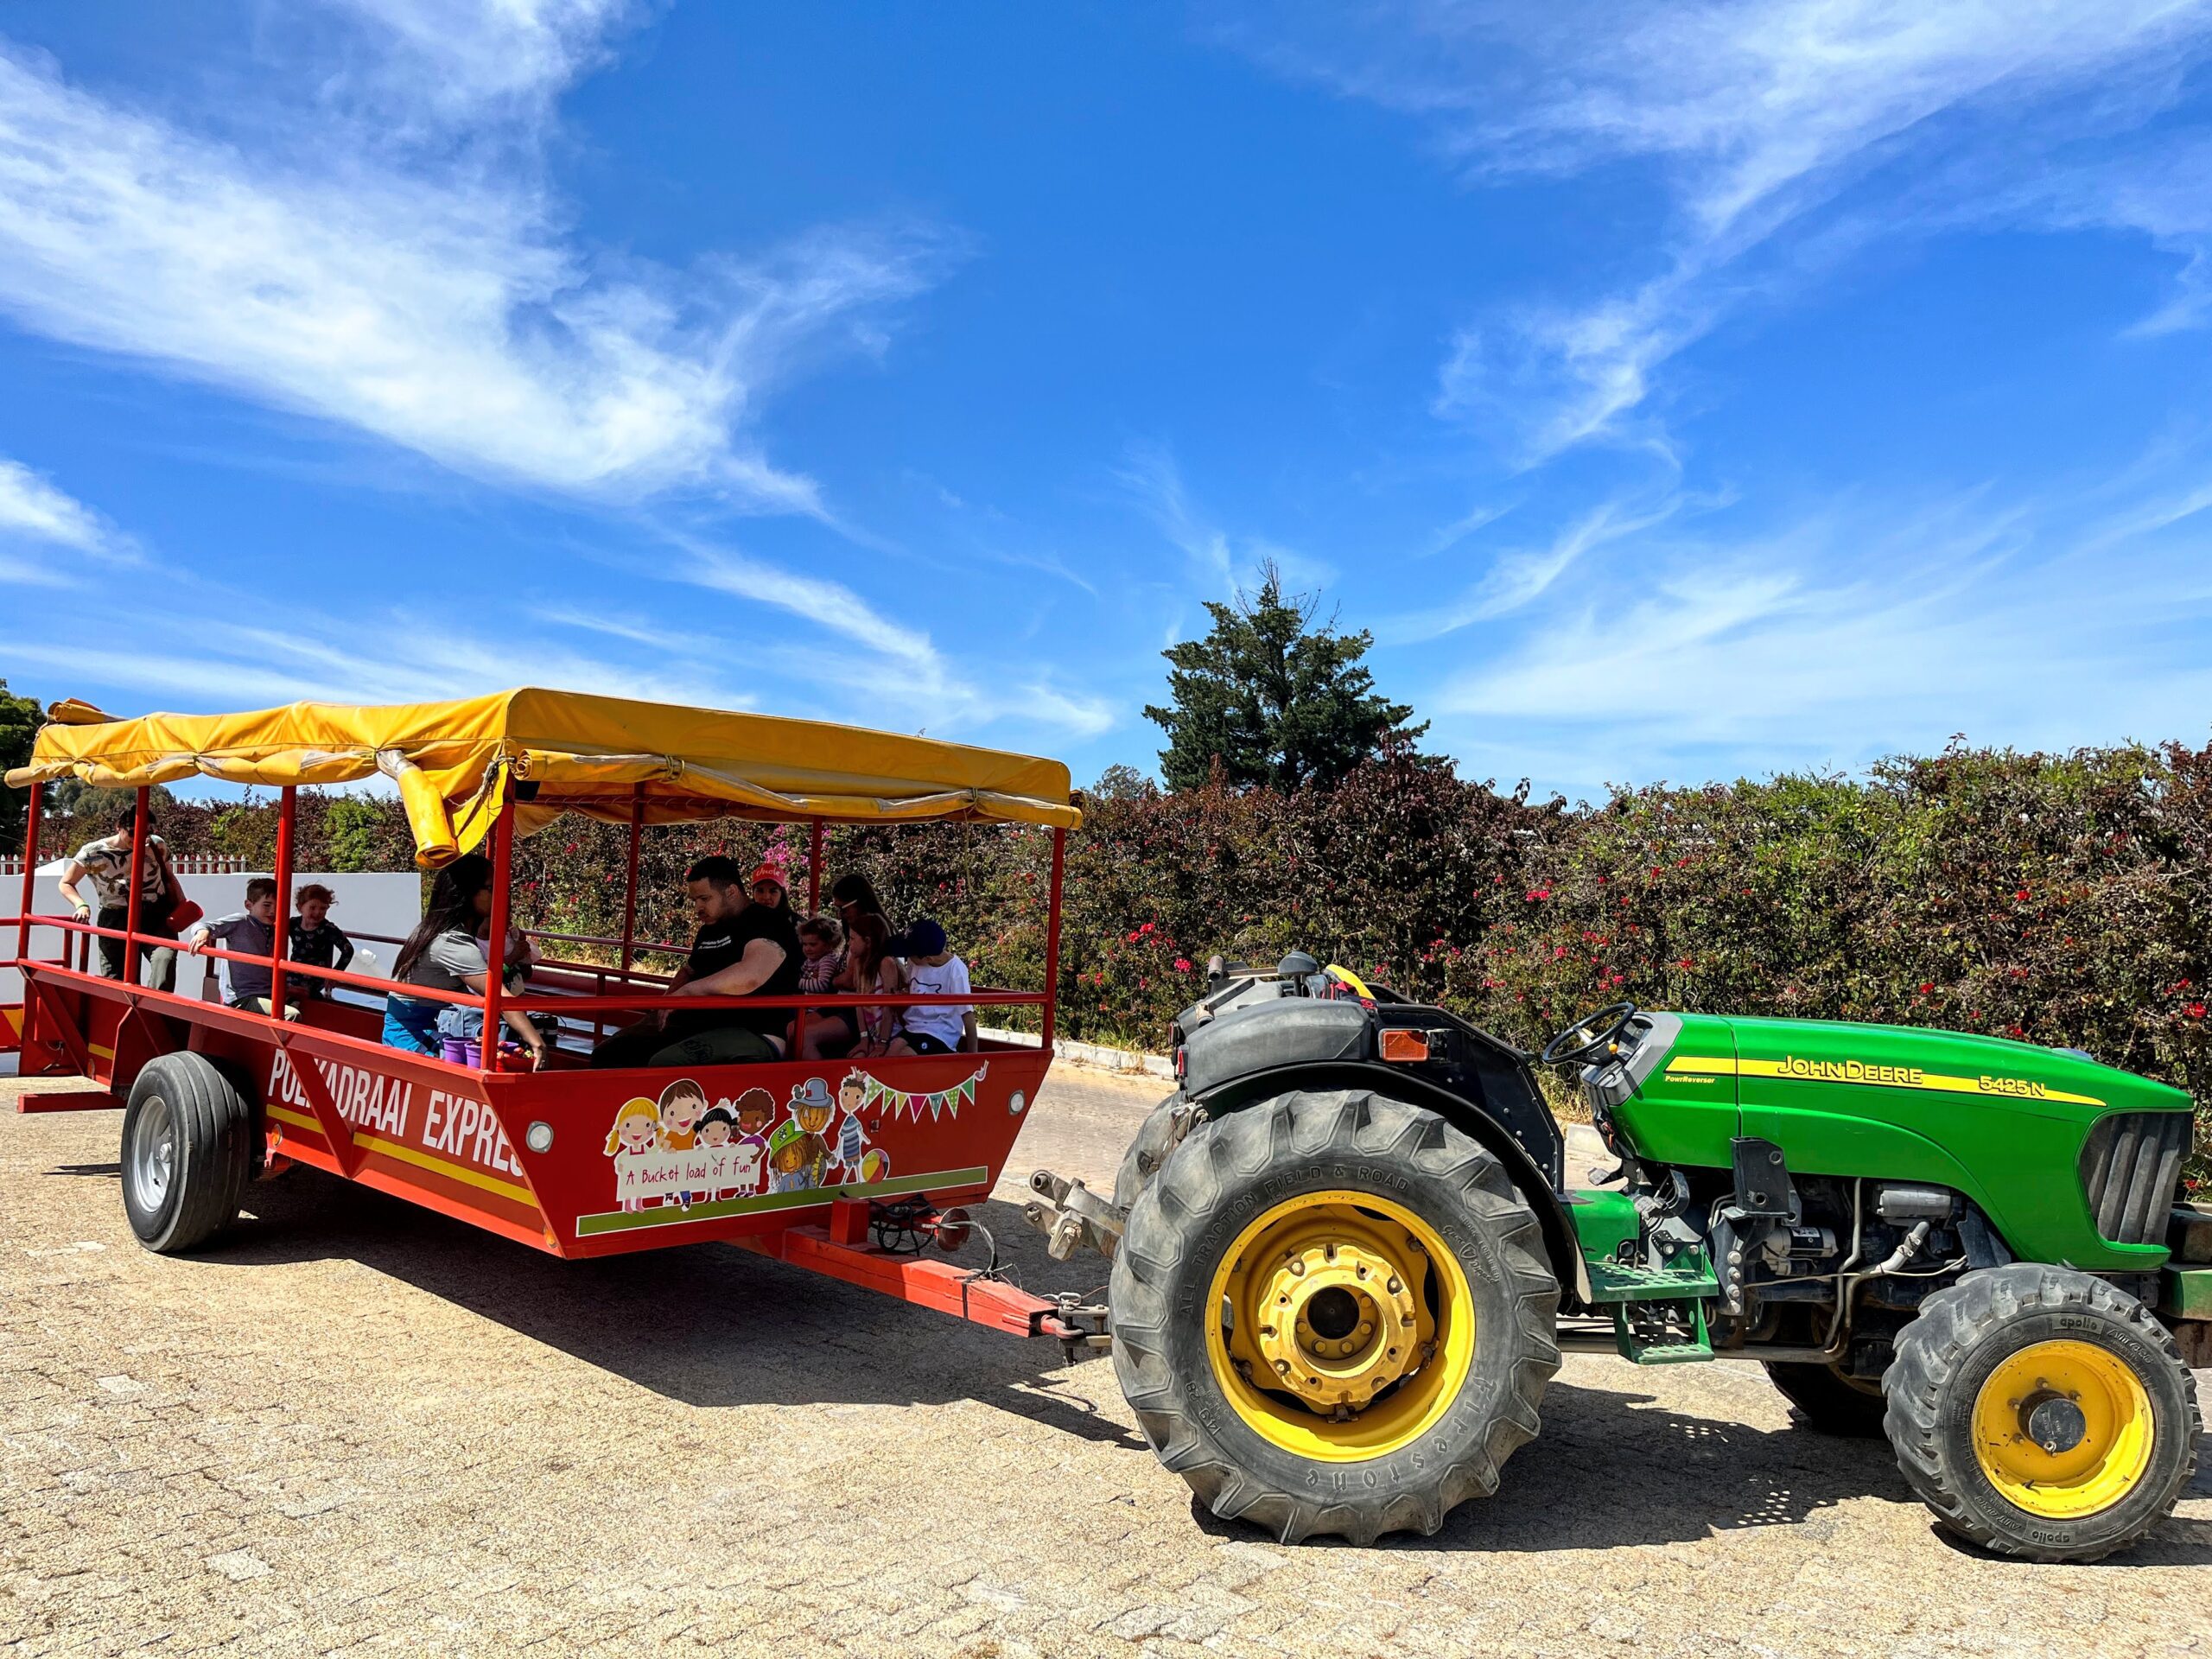 Polkadraai Farm Tractor Express